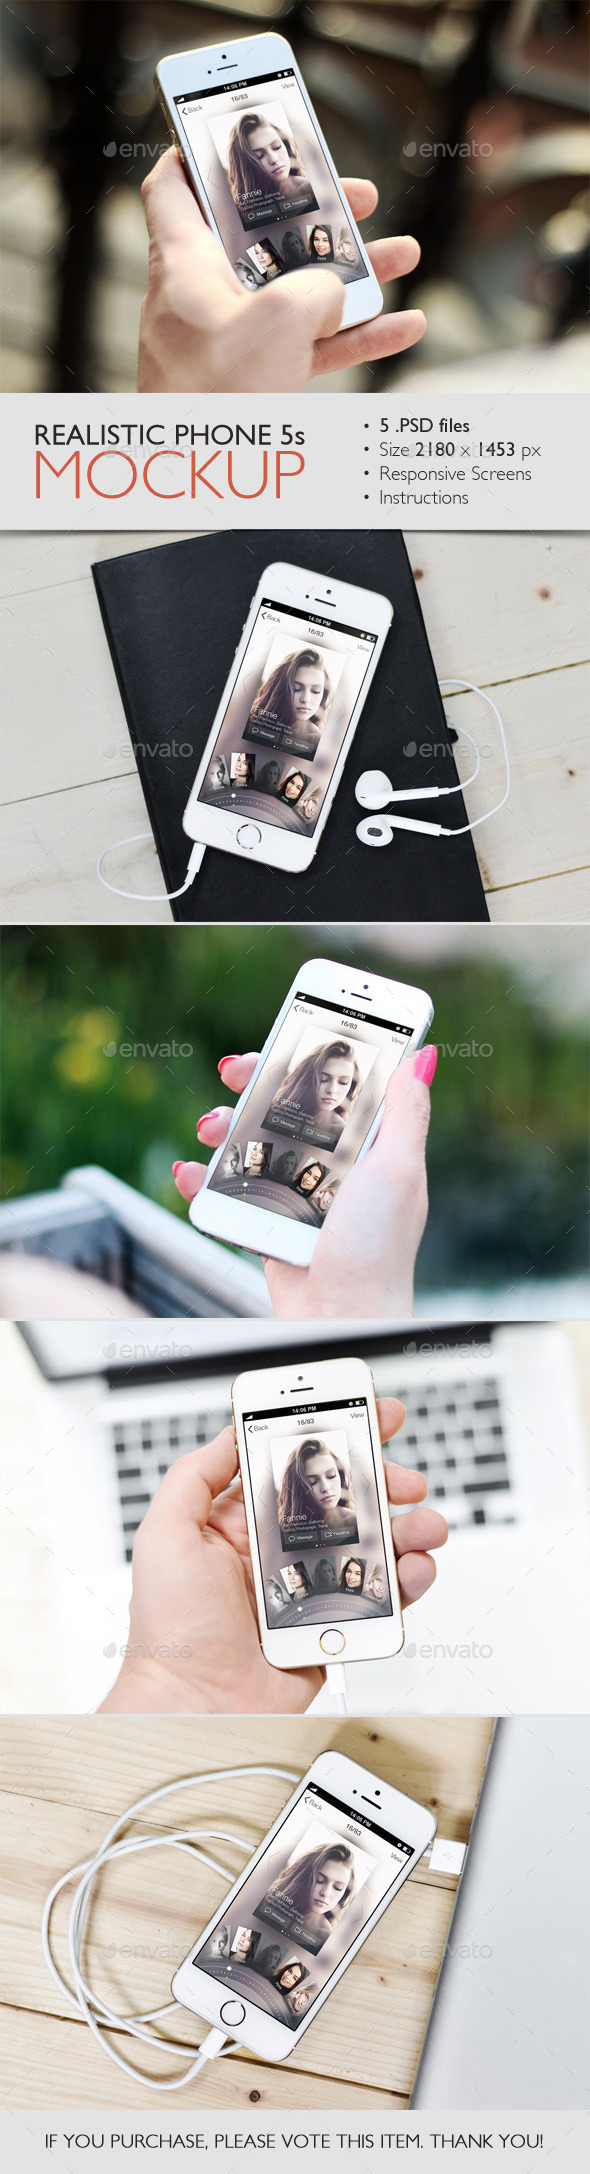 Realistic Phone 5s Mockup